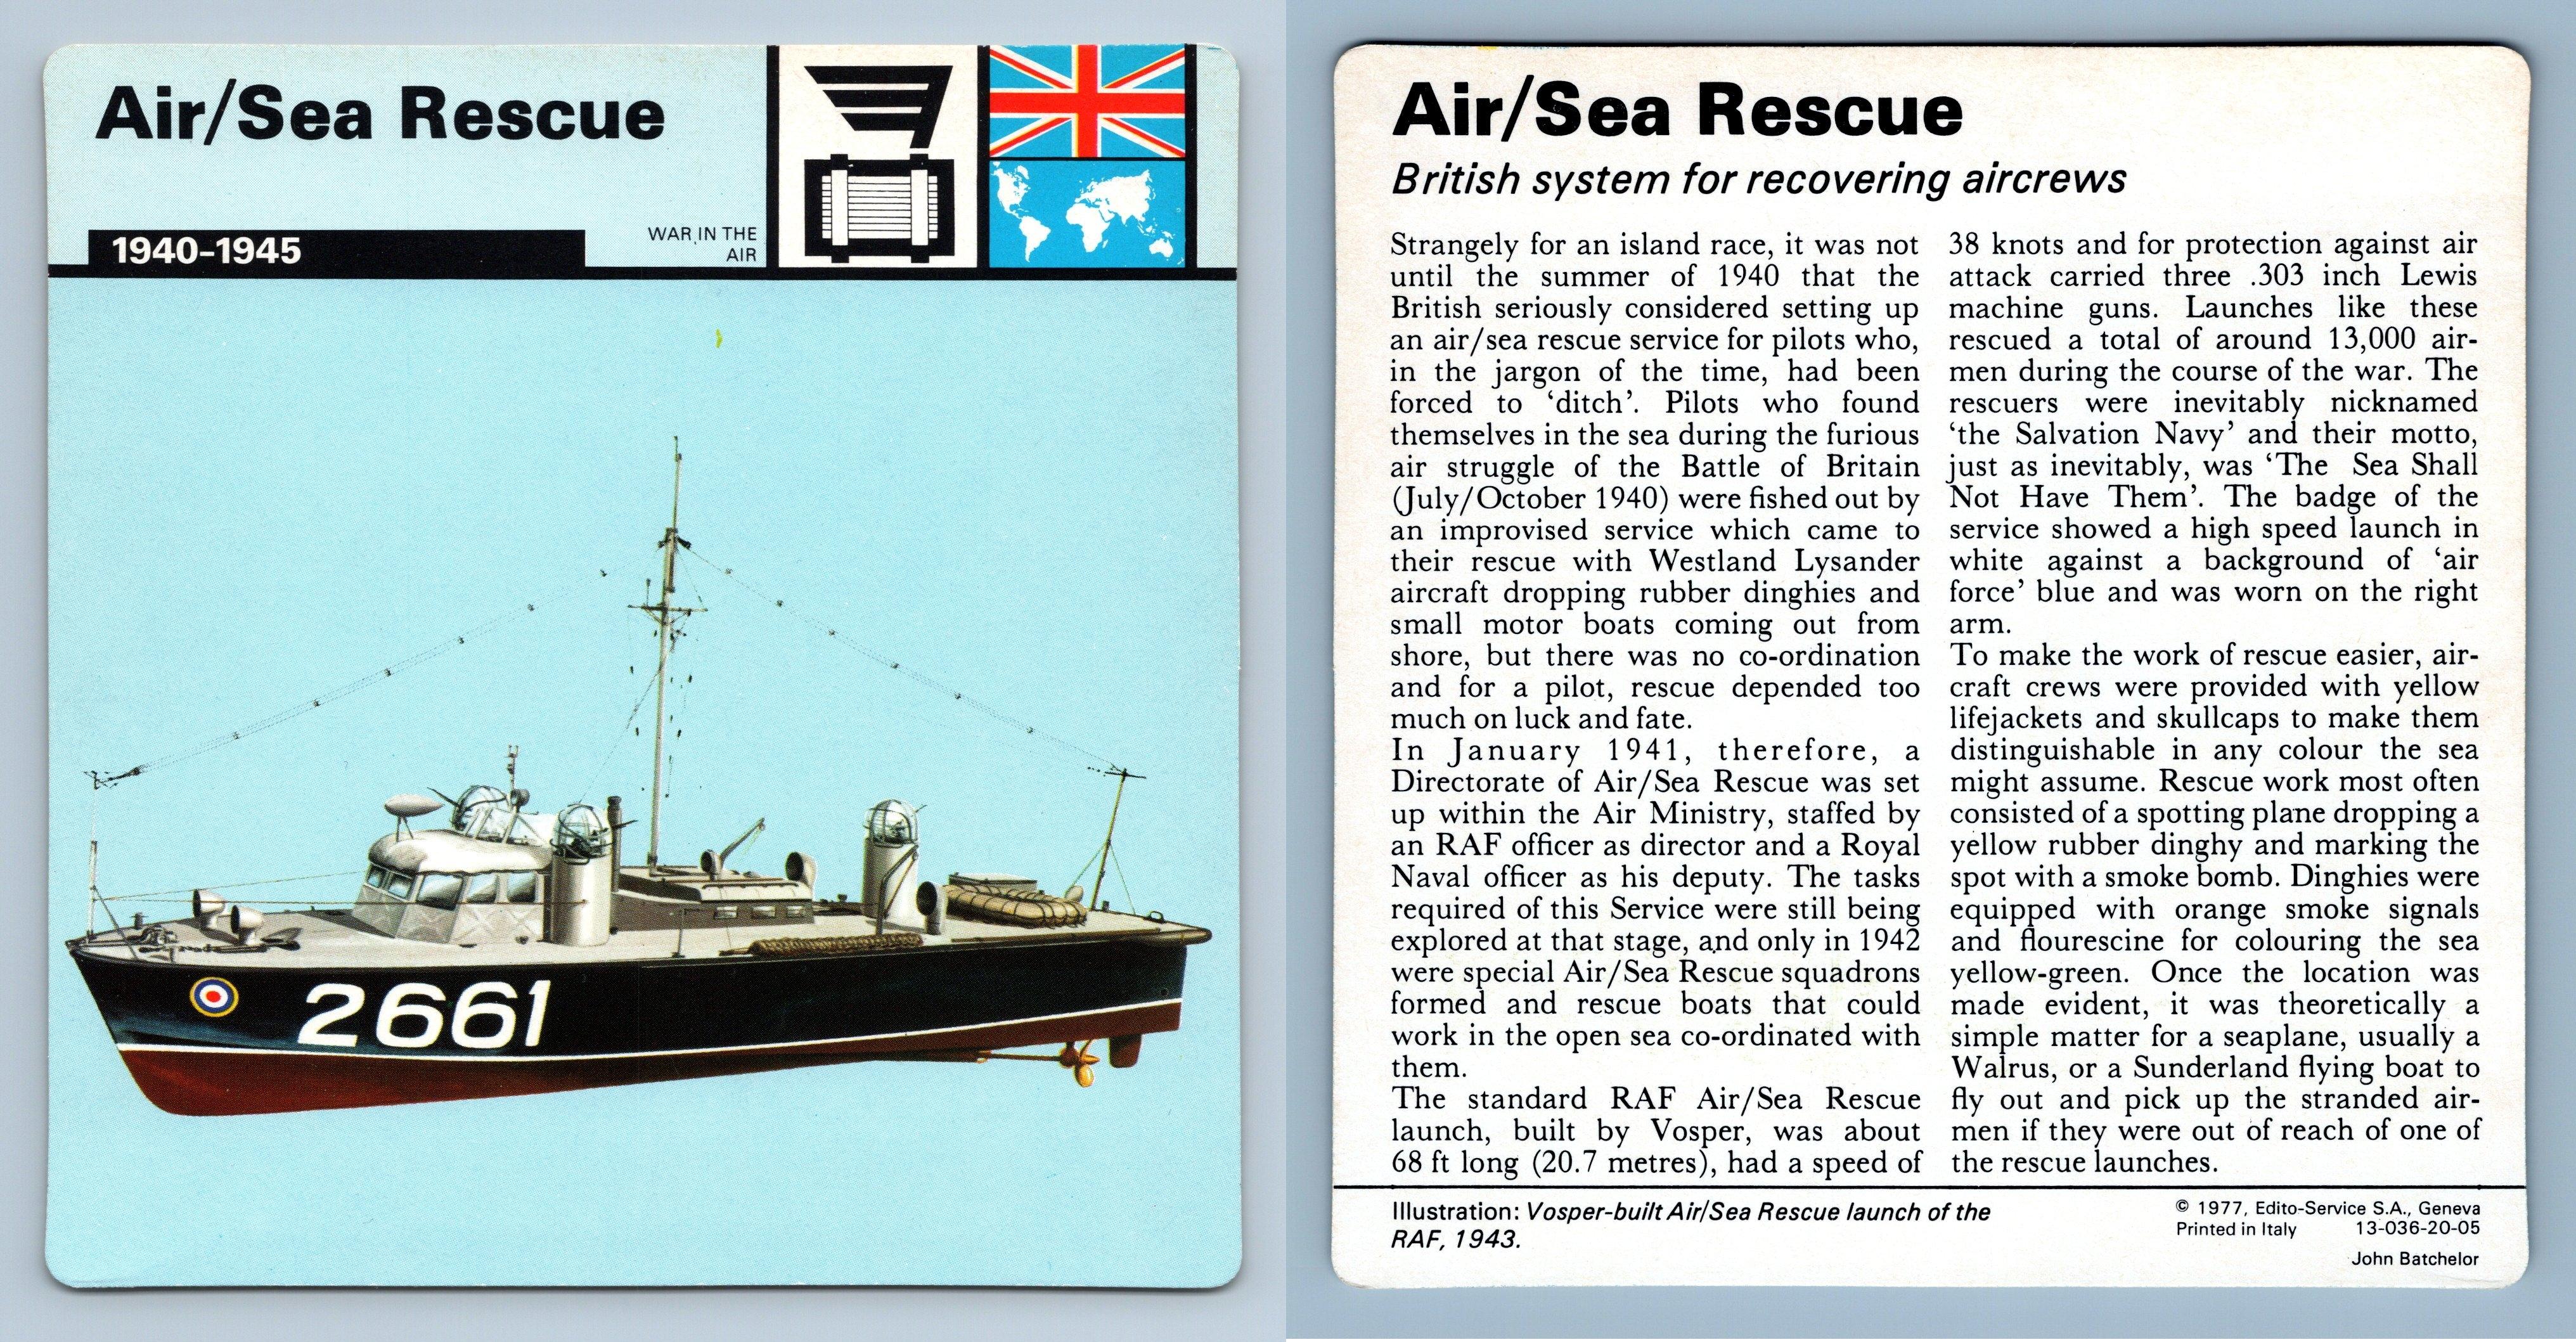 1940-45 Air/Sea Rescue War In The Air WW2 Edito-Service SA 1977 Card 